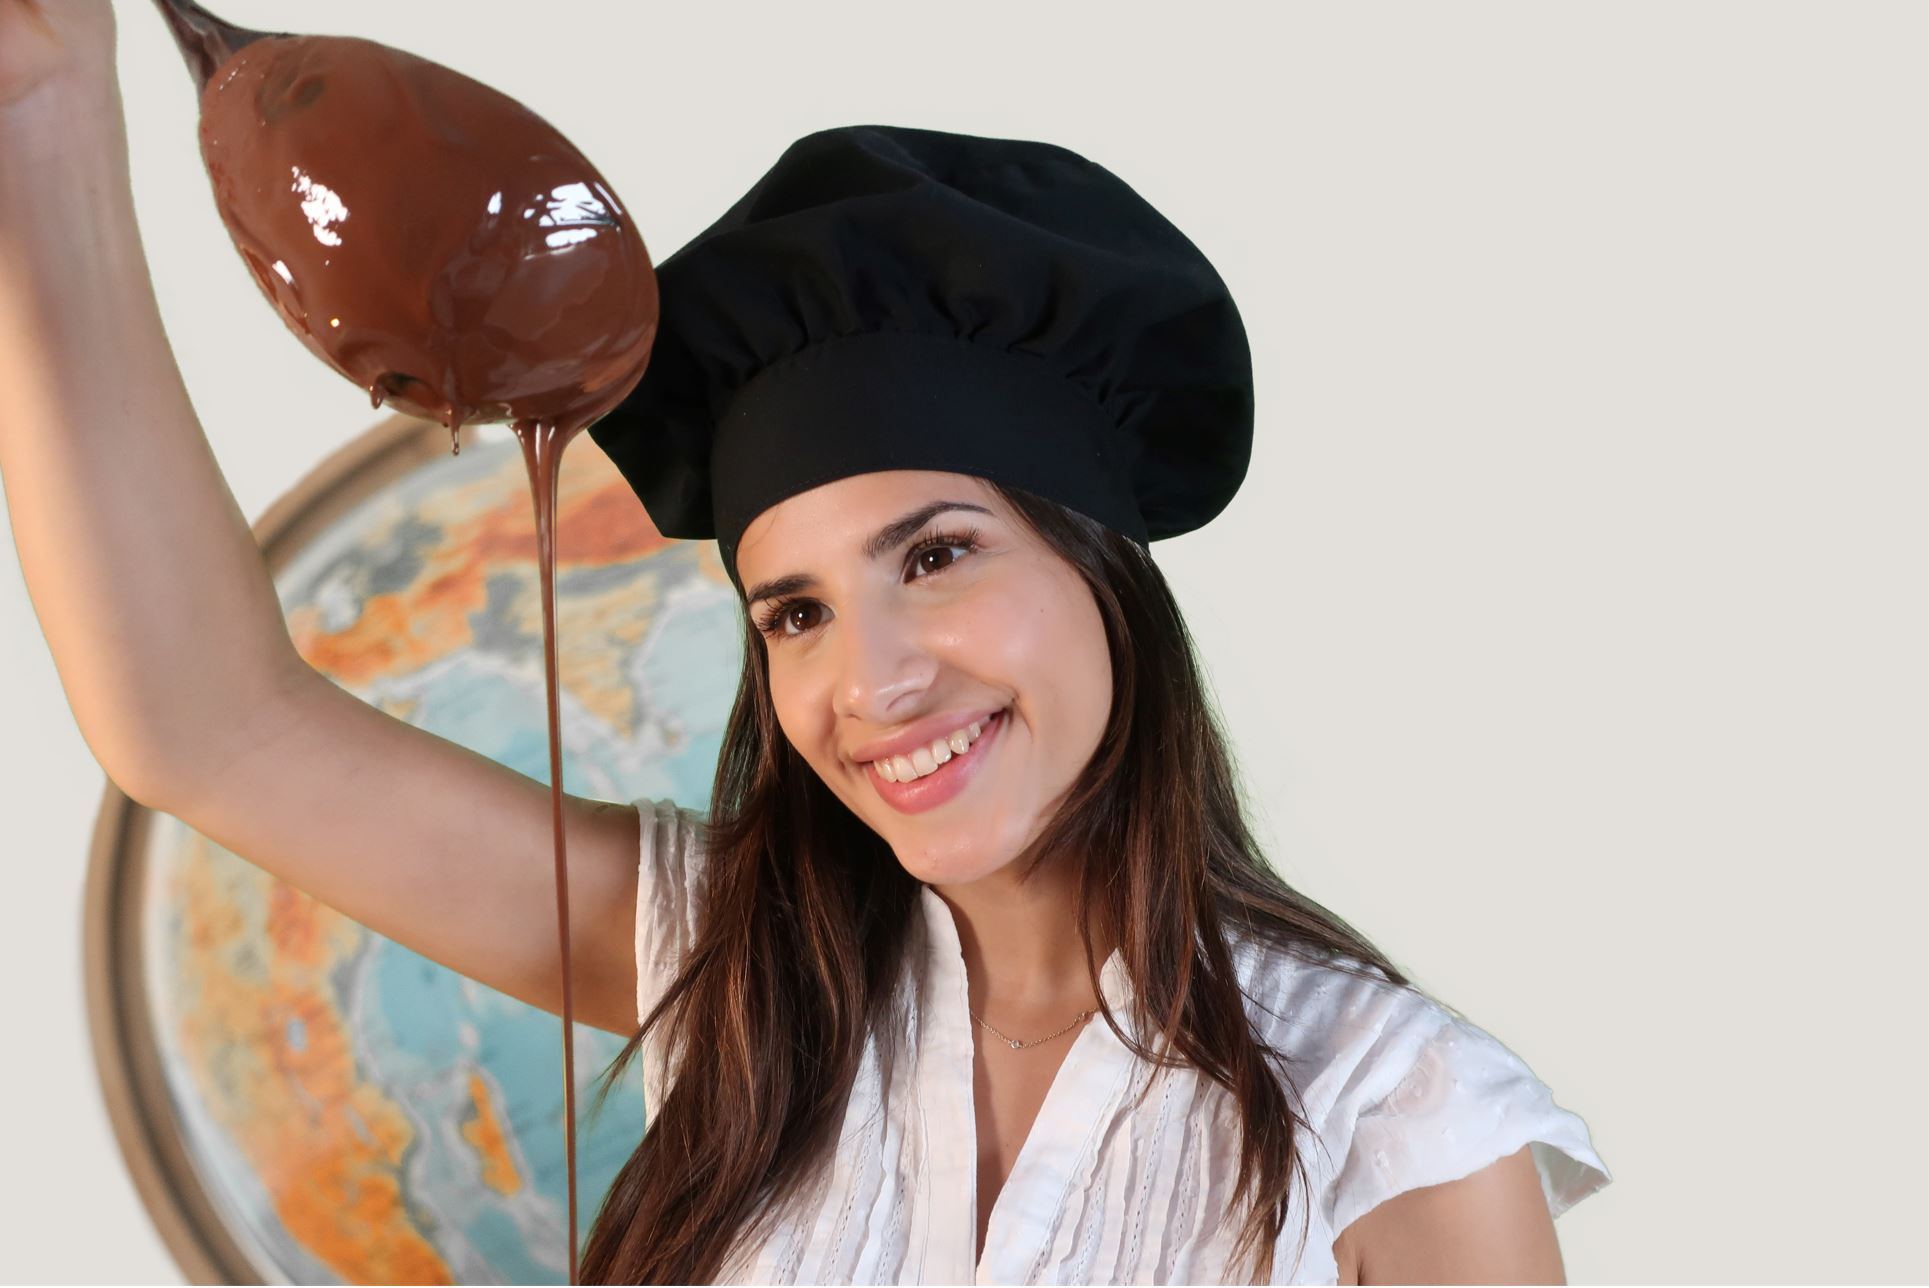 90 Min. Schokoladen-Workshop und -Tasting inkl. mexikanische Trinkschokolade für 2 Personen bei Soirée Chocolat